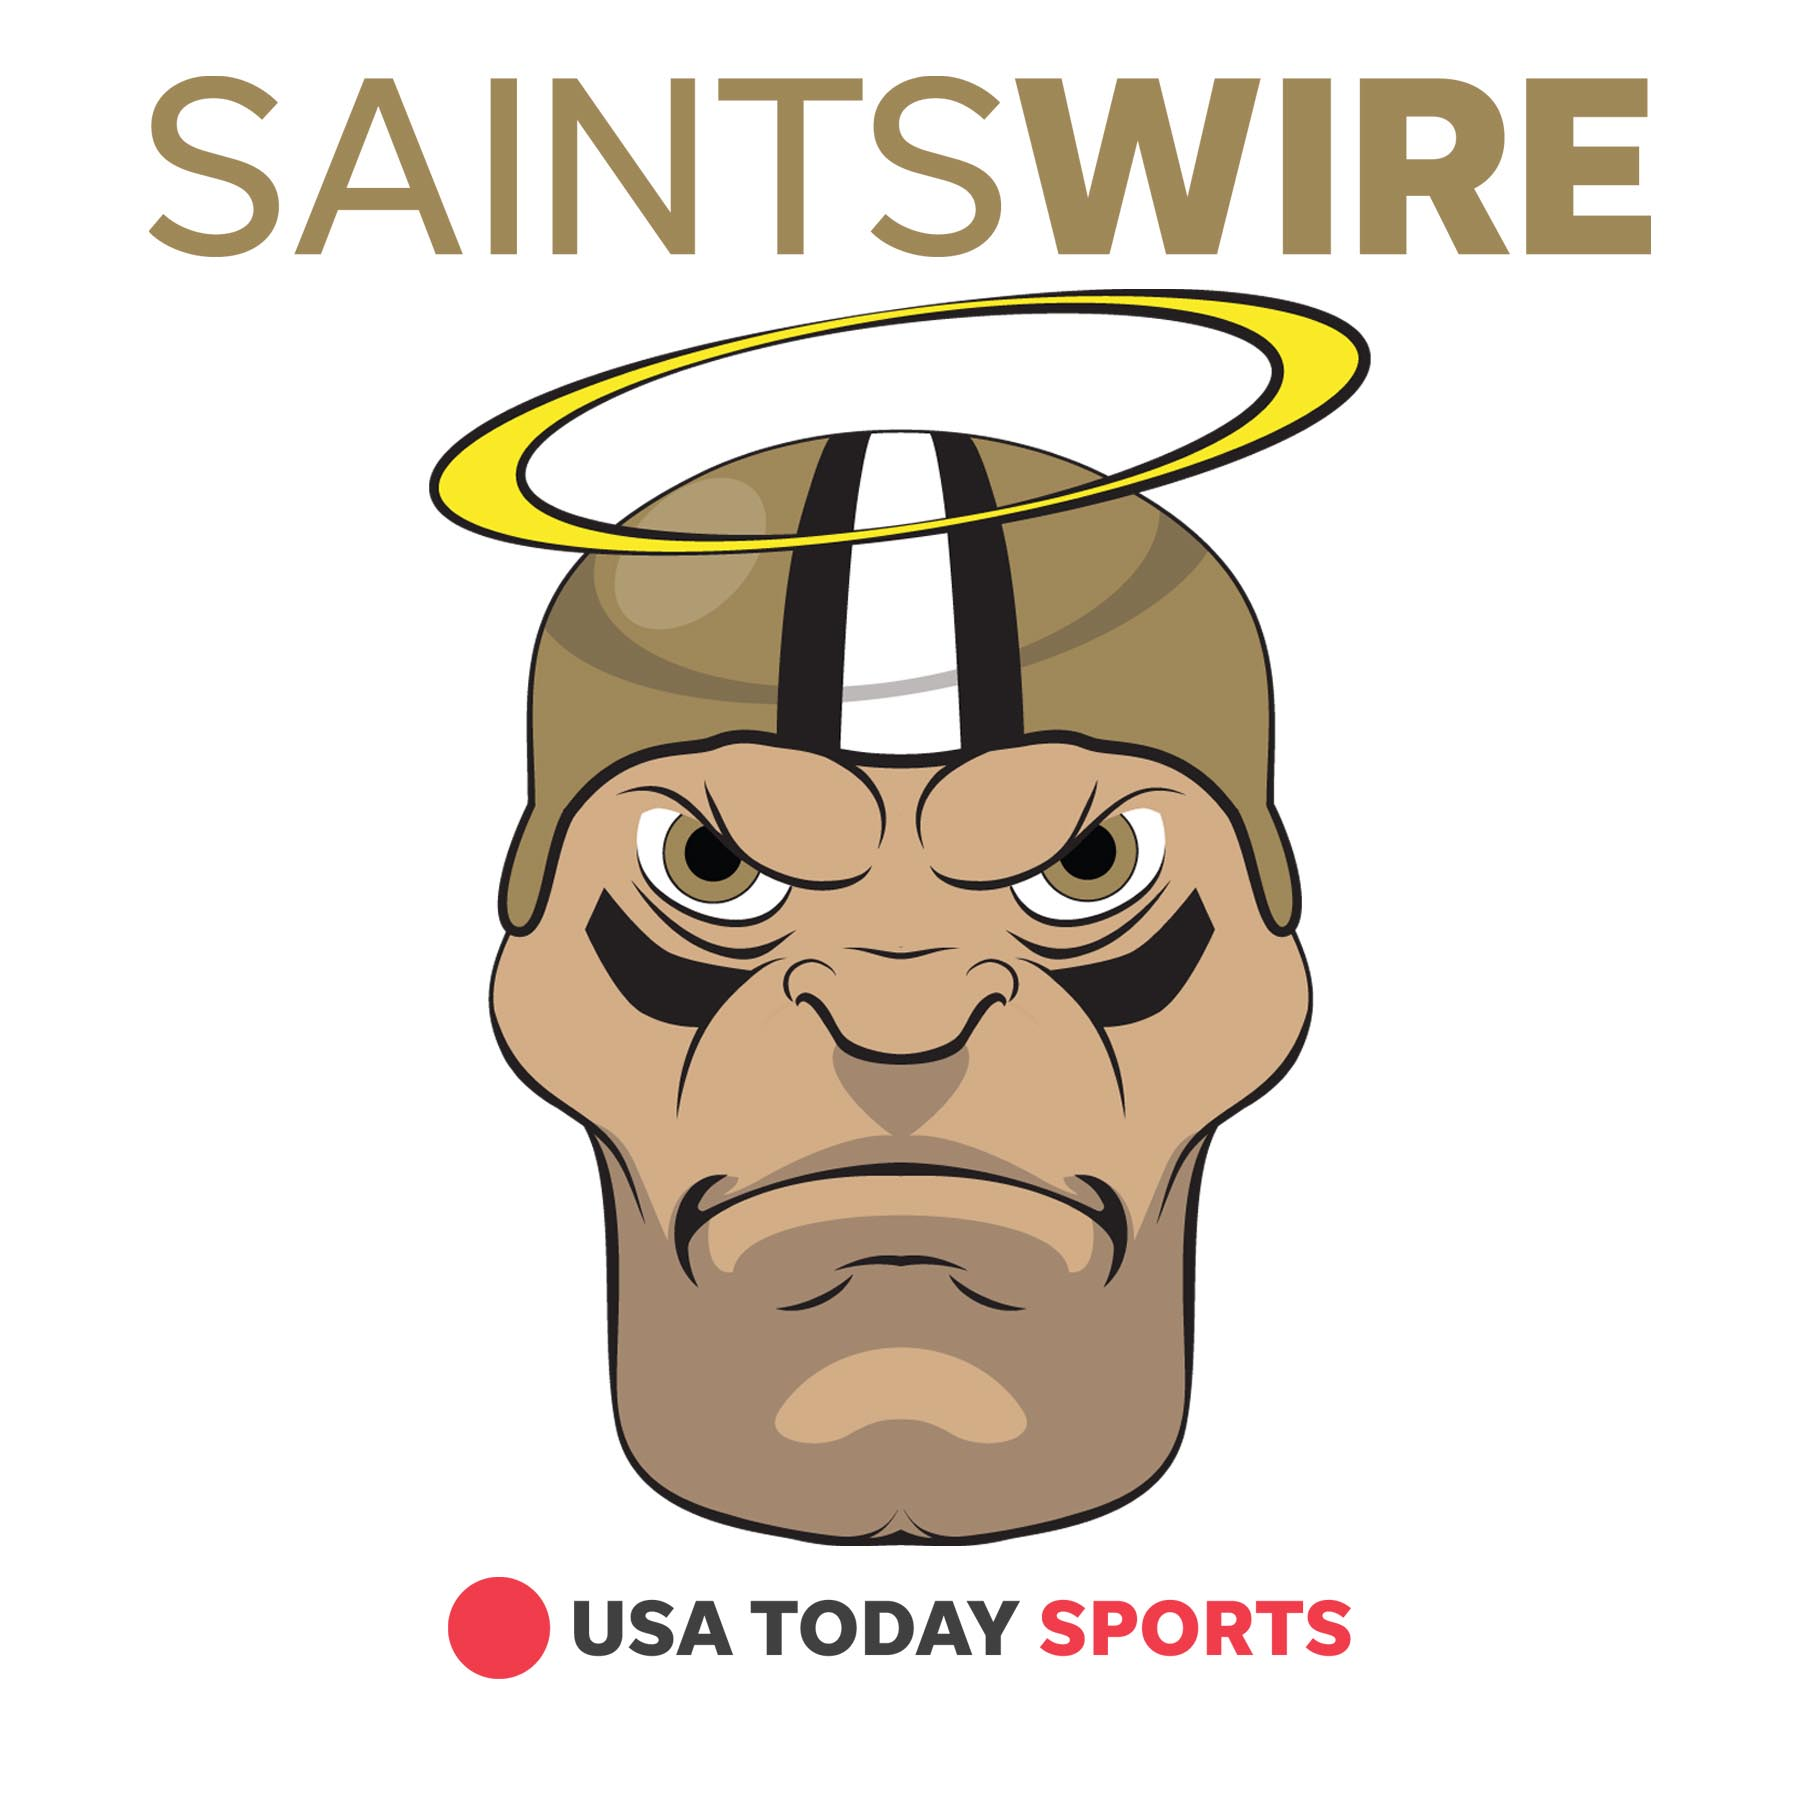 A legit pass catcher could push Saints back into NFC contention